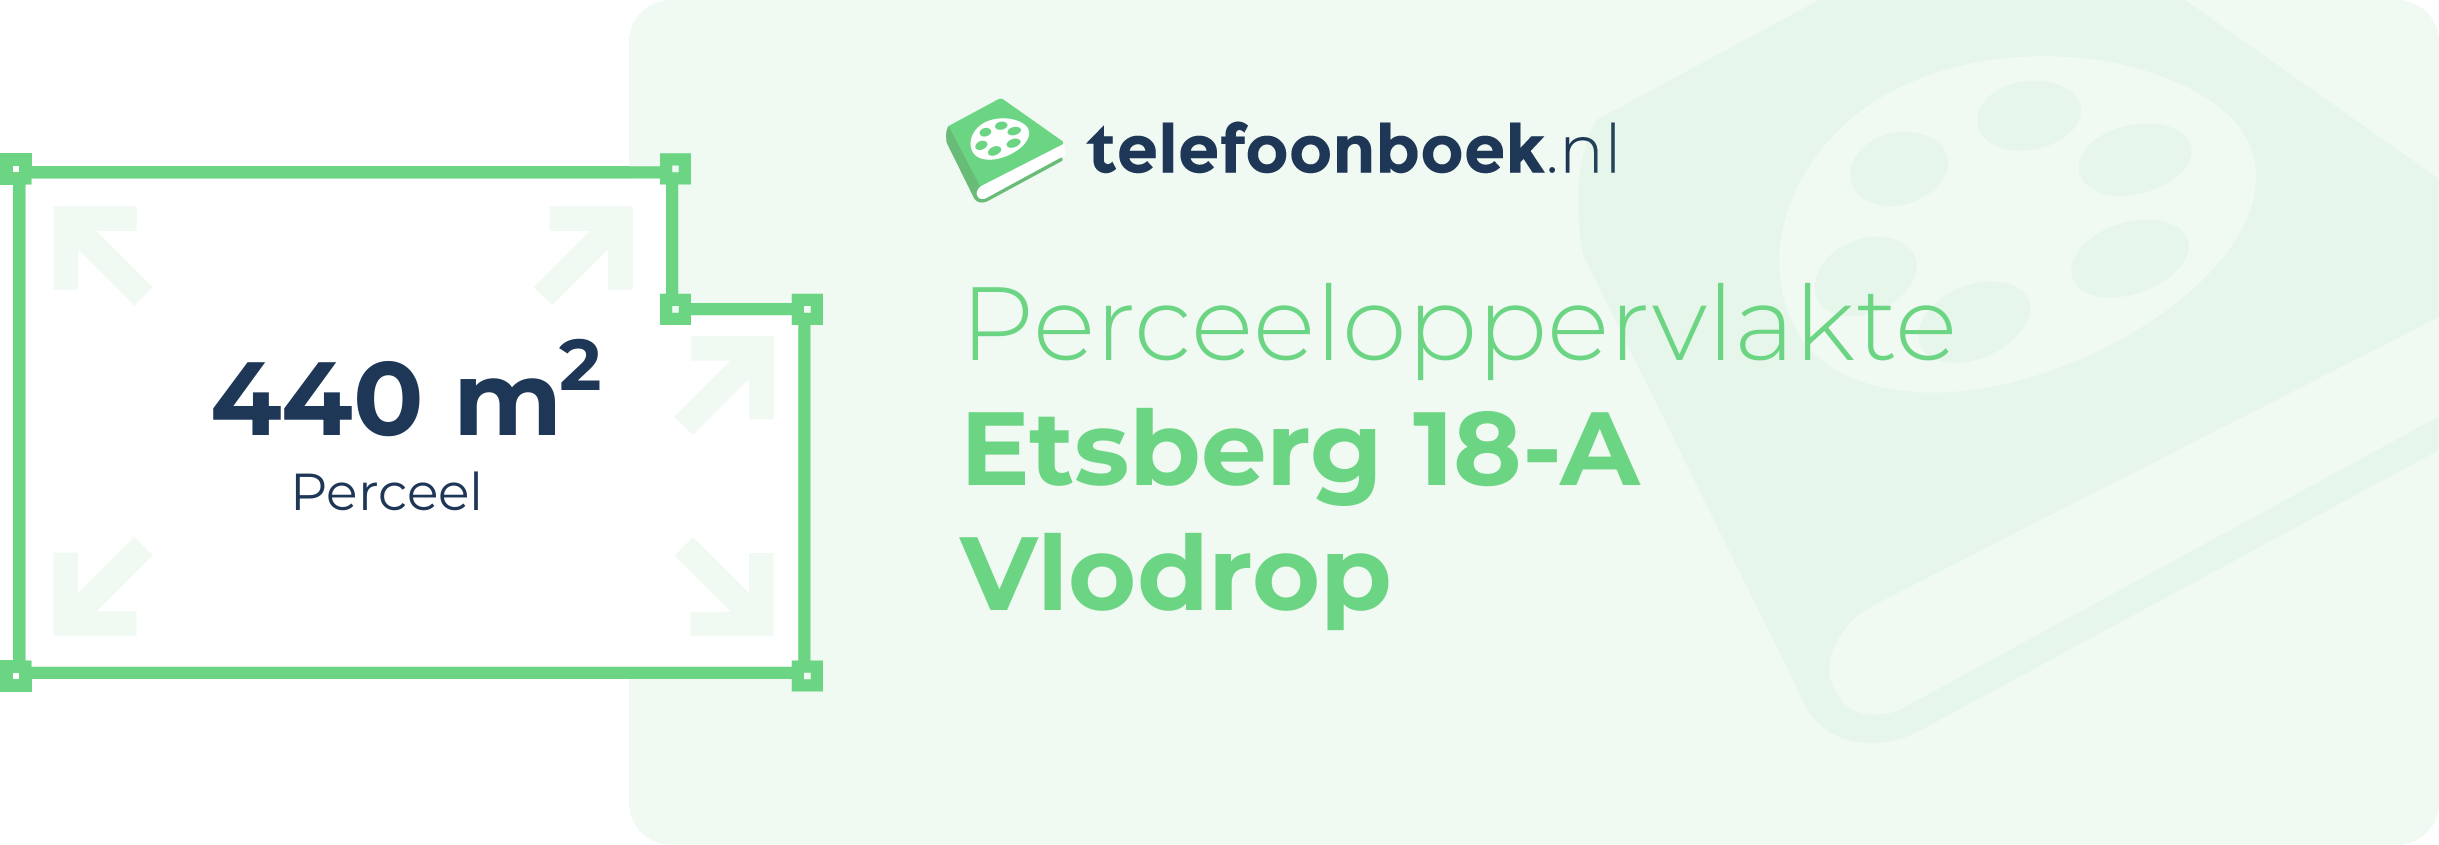 Perceeloppervlakte Etsberg 18-A Vlodrop